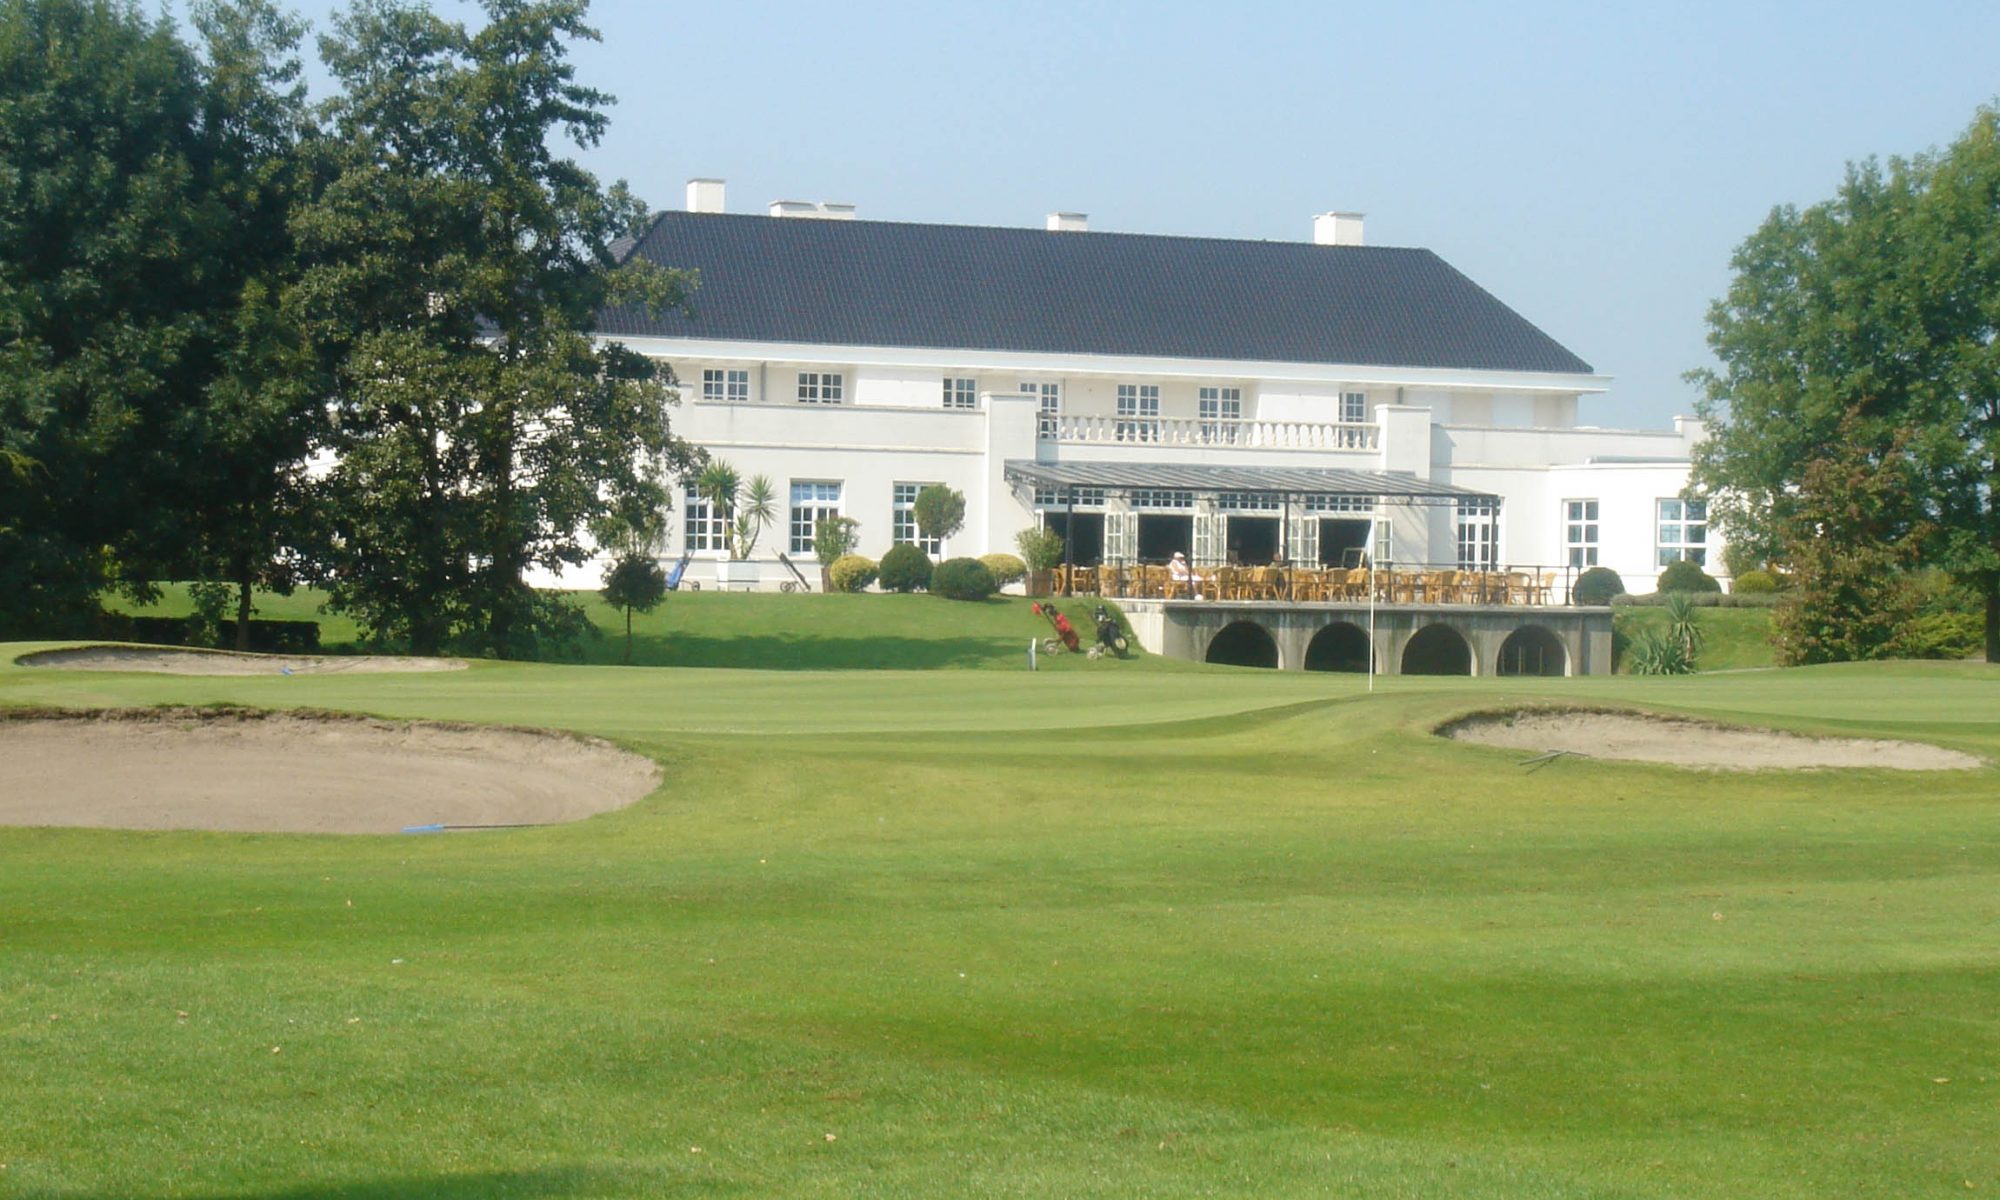 Oostburg golfbaan De Brugse Vaart